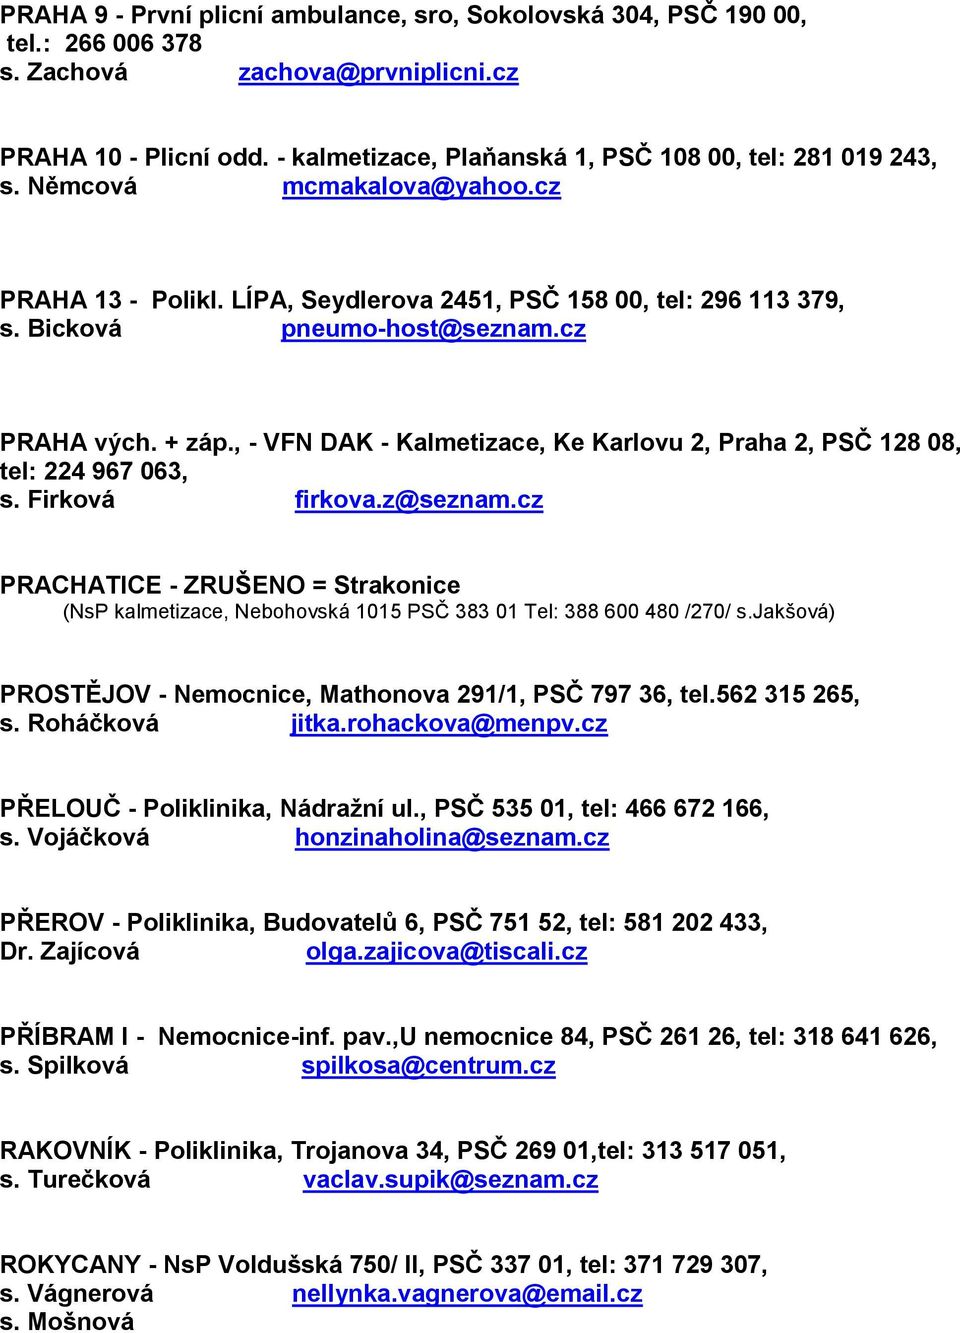 ADRESY KALMETIZACÍ V ČESKÉ REPUBLICE - PDF Stažení zdarma